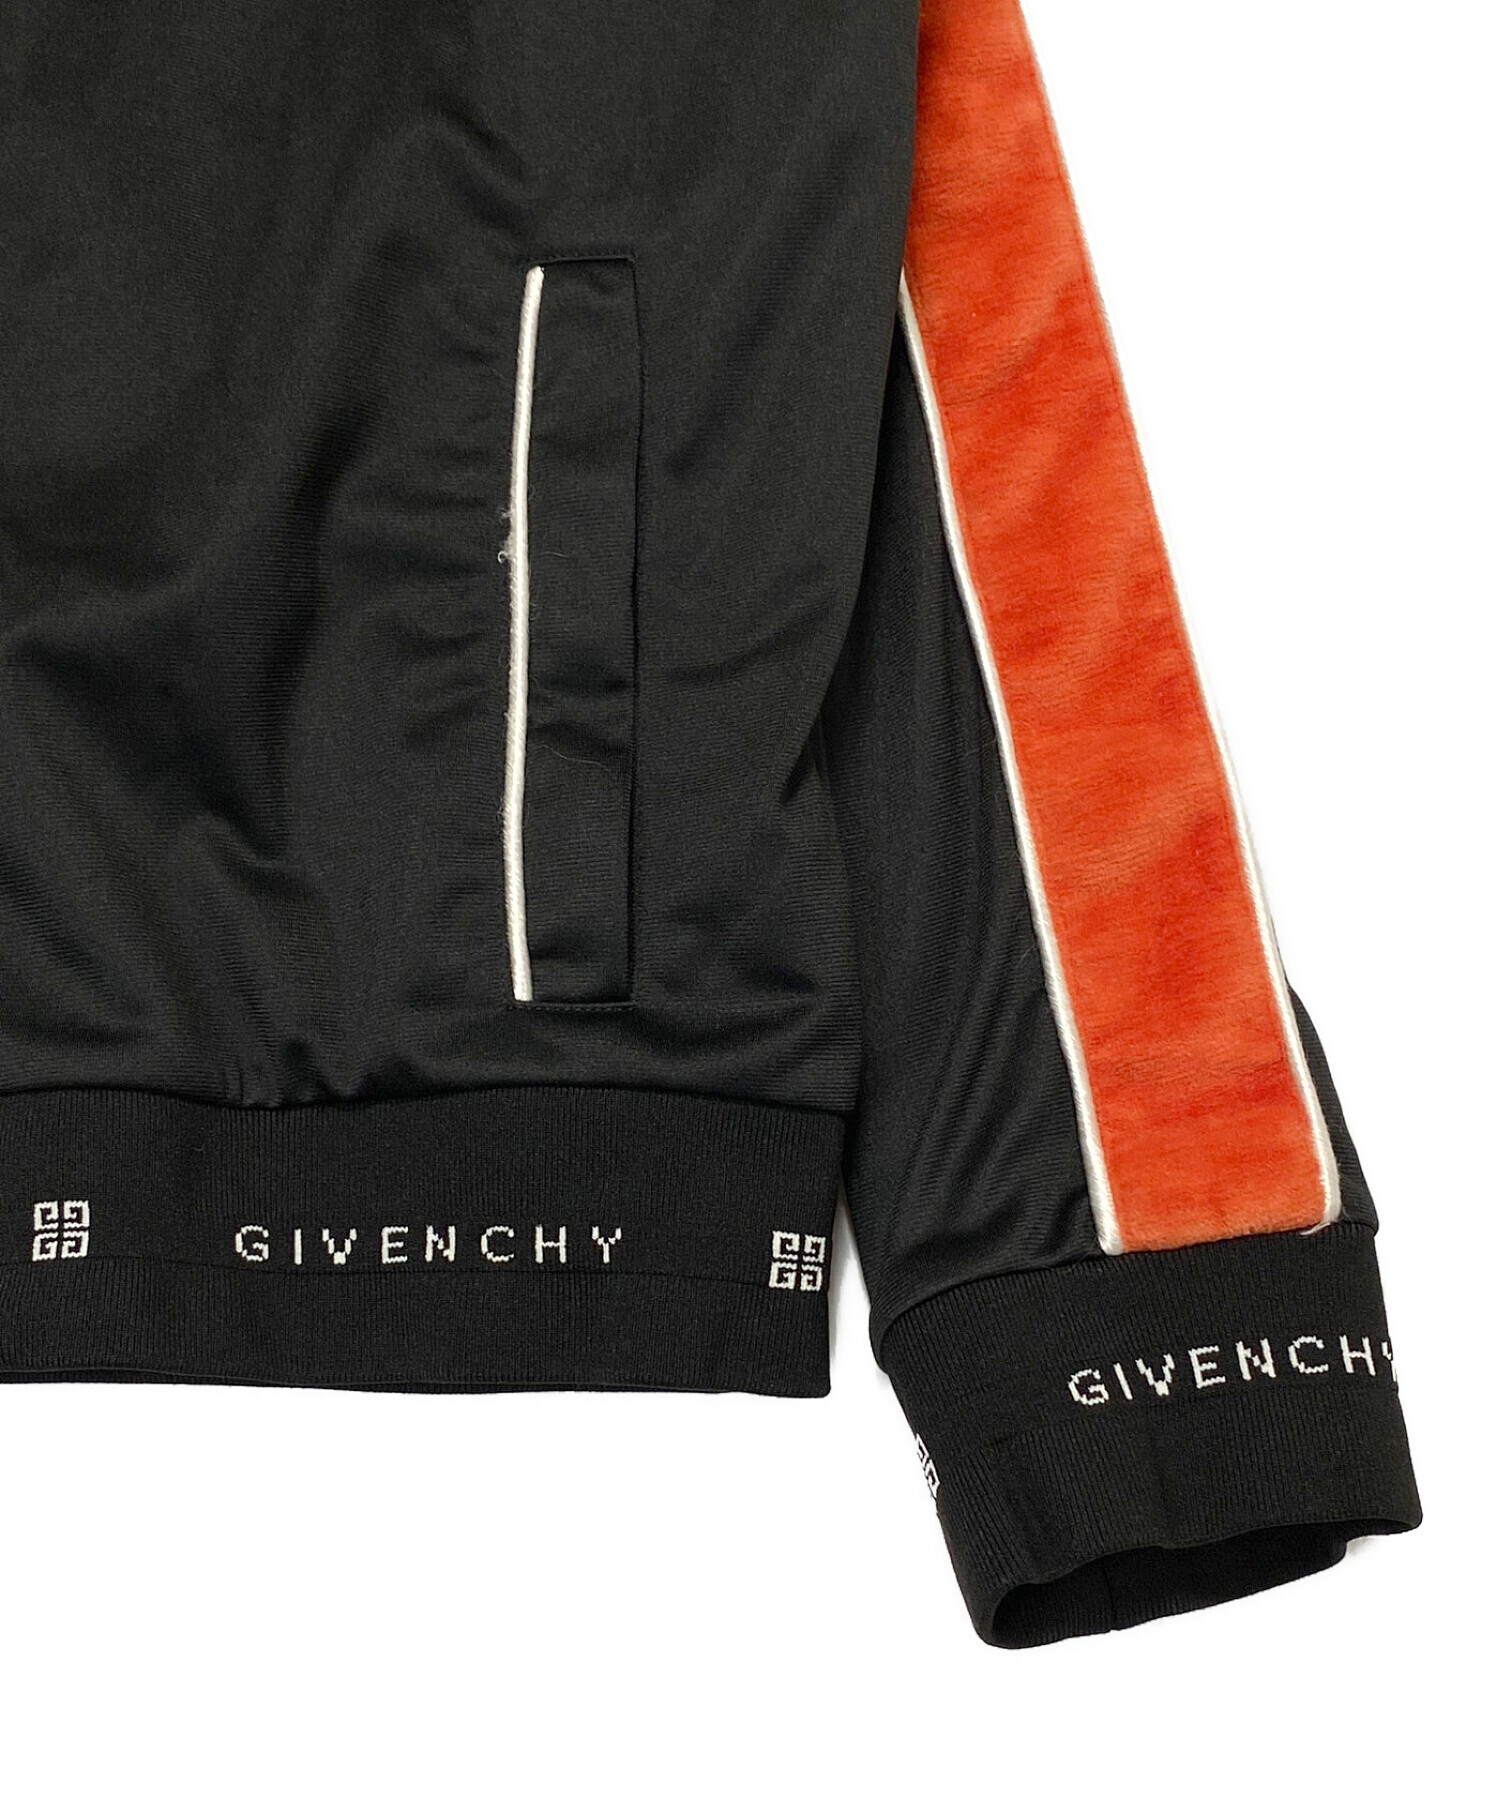 GIVENCHY (ジバンシィ) ベロアライントラックジャケット ブラック×オレンジ サイズ:XL